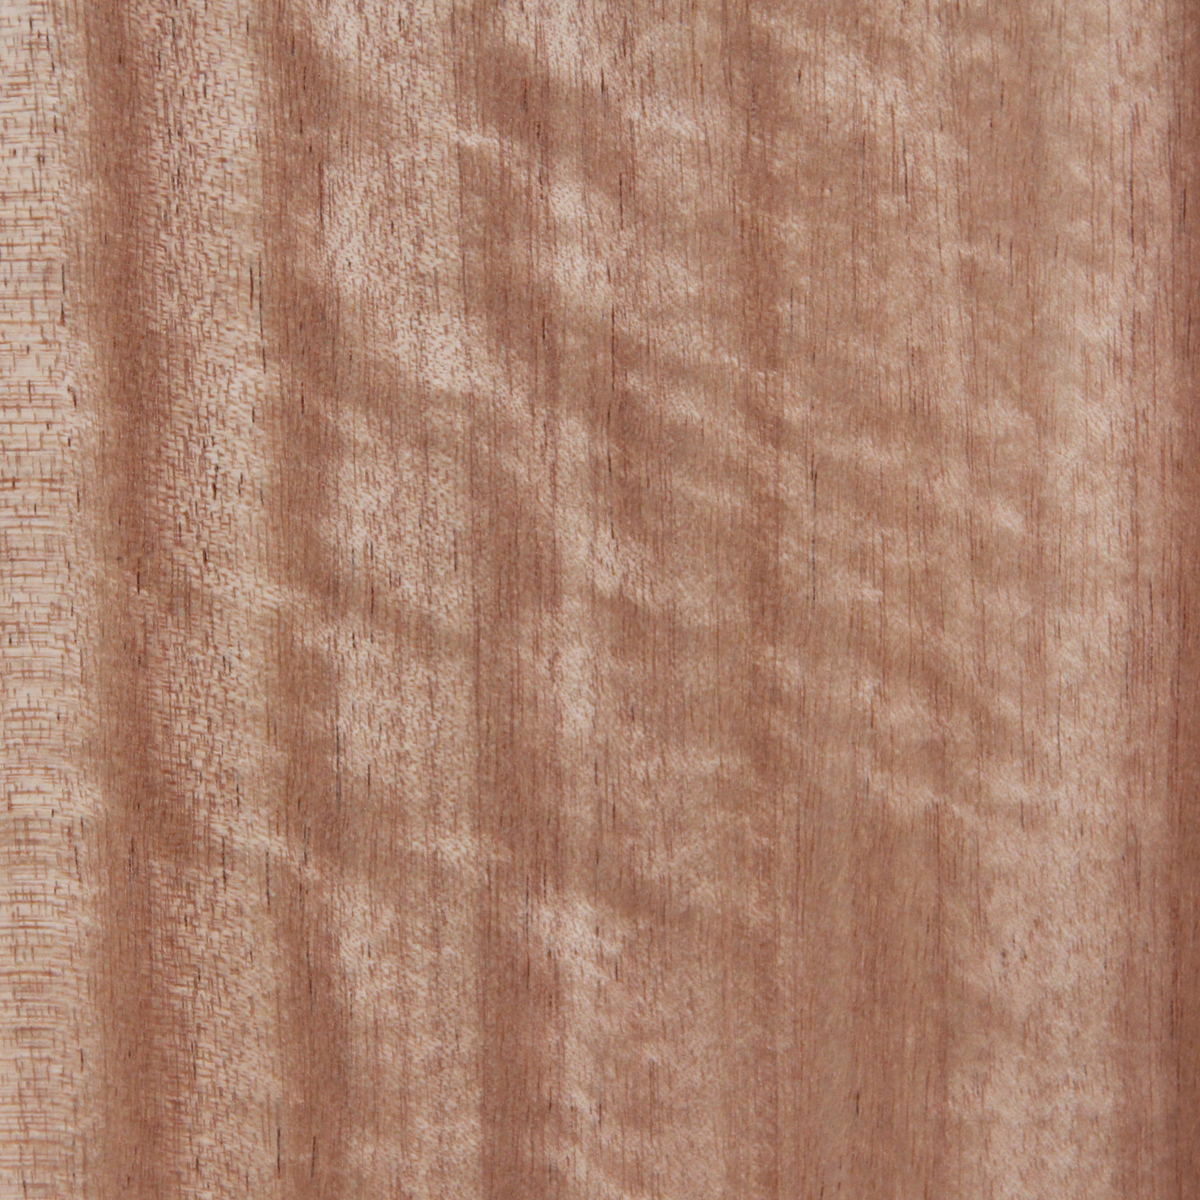 Queensland Maple (Quarter) - Timber Veneer Species